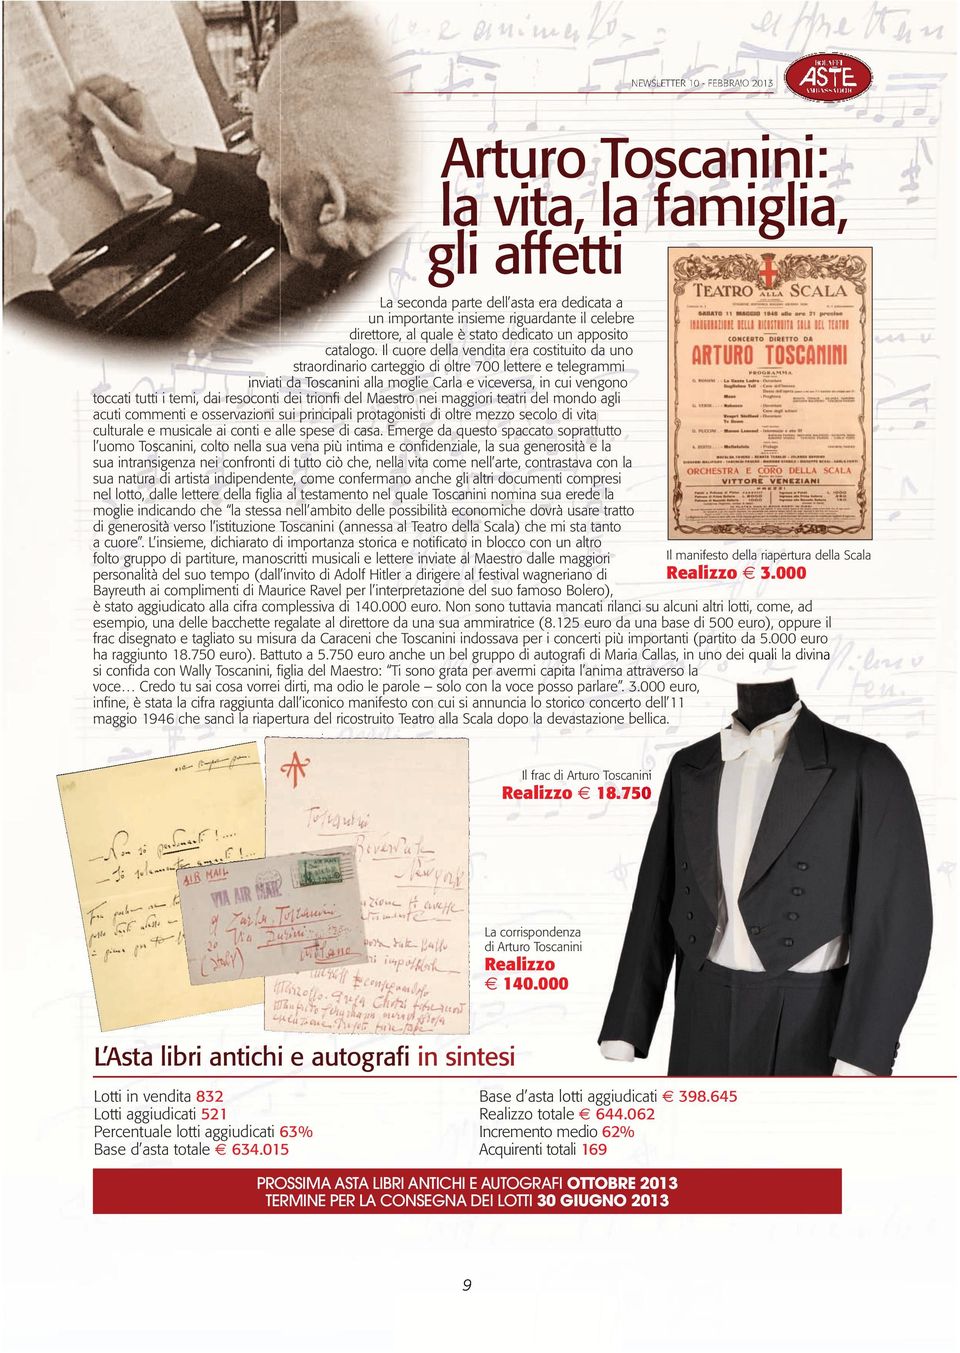 Il cuore della vendita era costituito da uno straordinario carteggio di oltre 700 lettere e telegrammi inviati da Toscanini alla moglie Carla e viceversa, in cui vengono toccati tutti i temi, dai